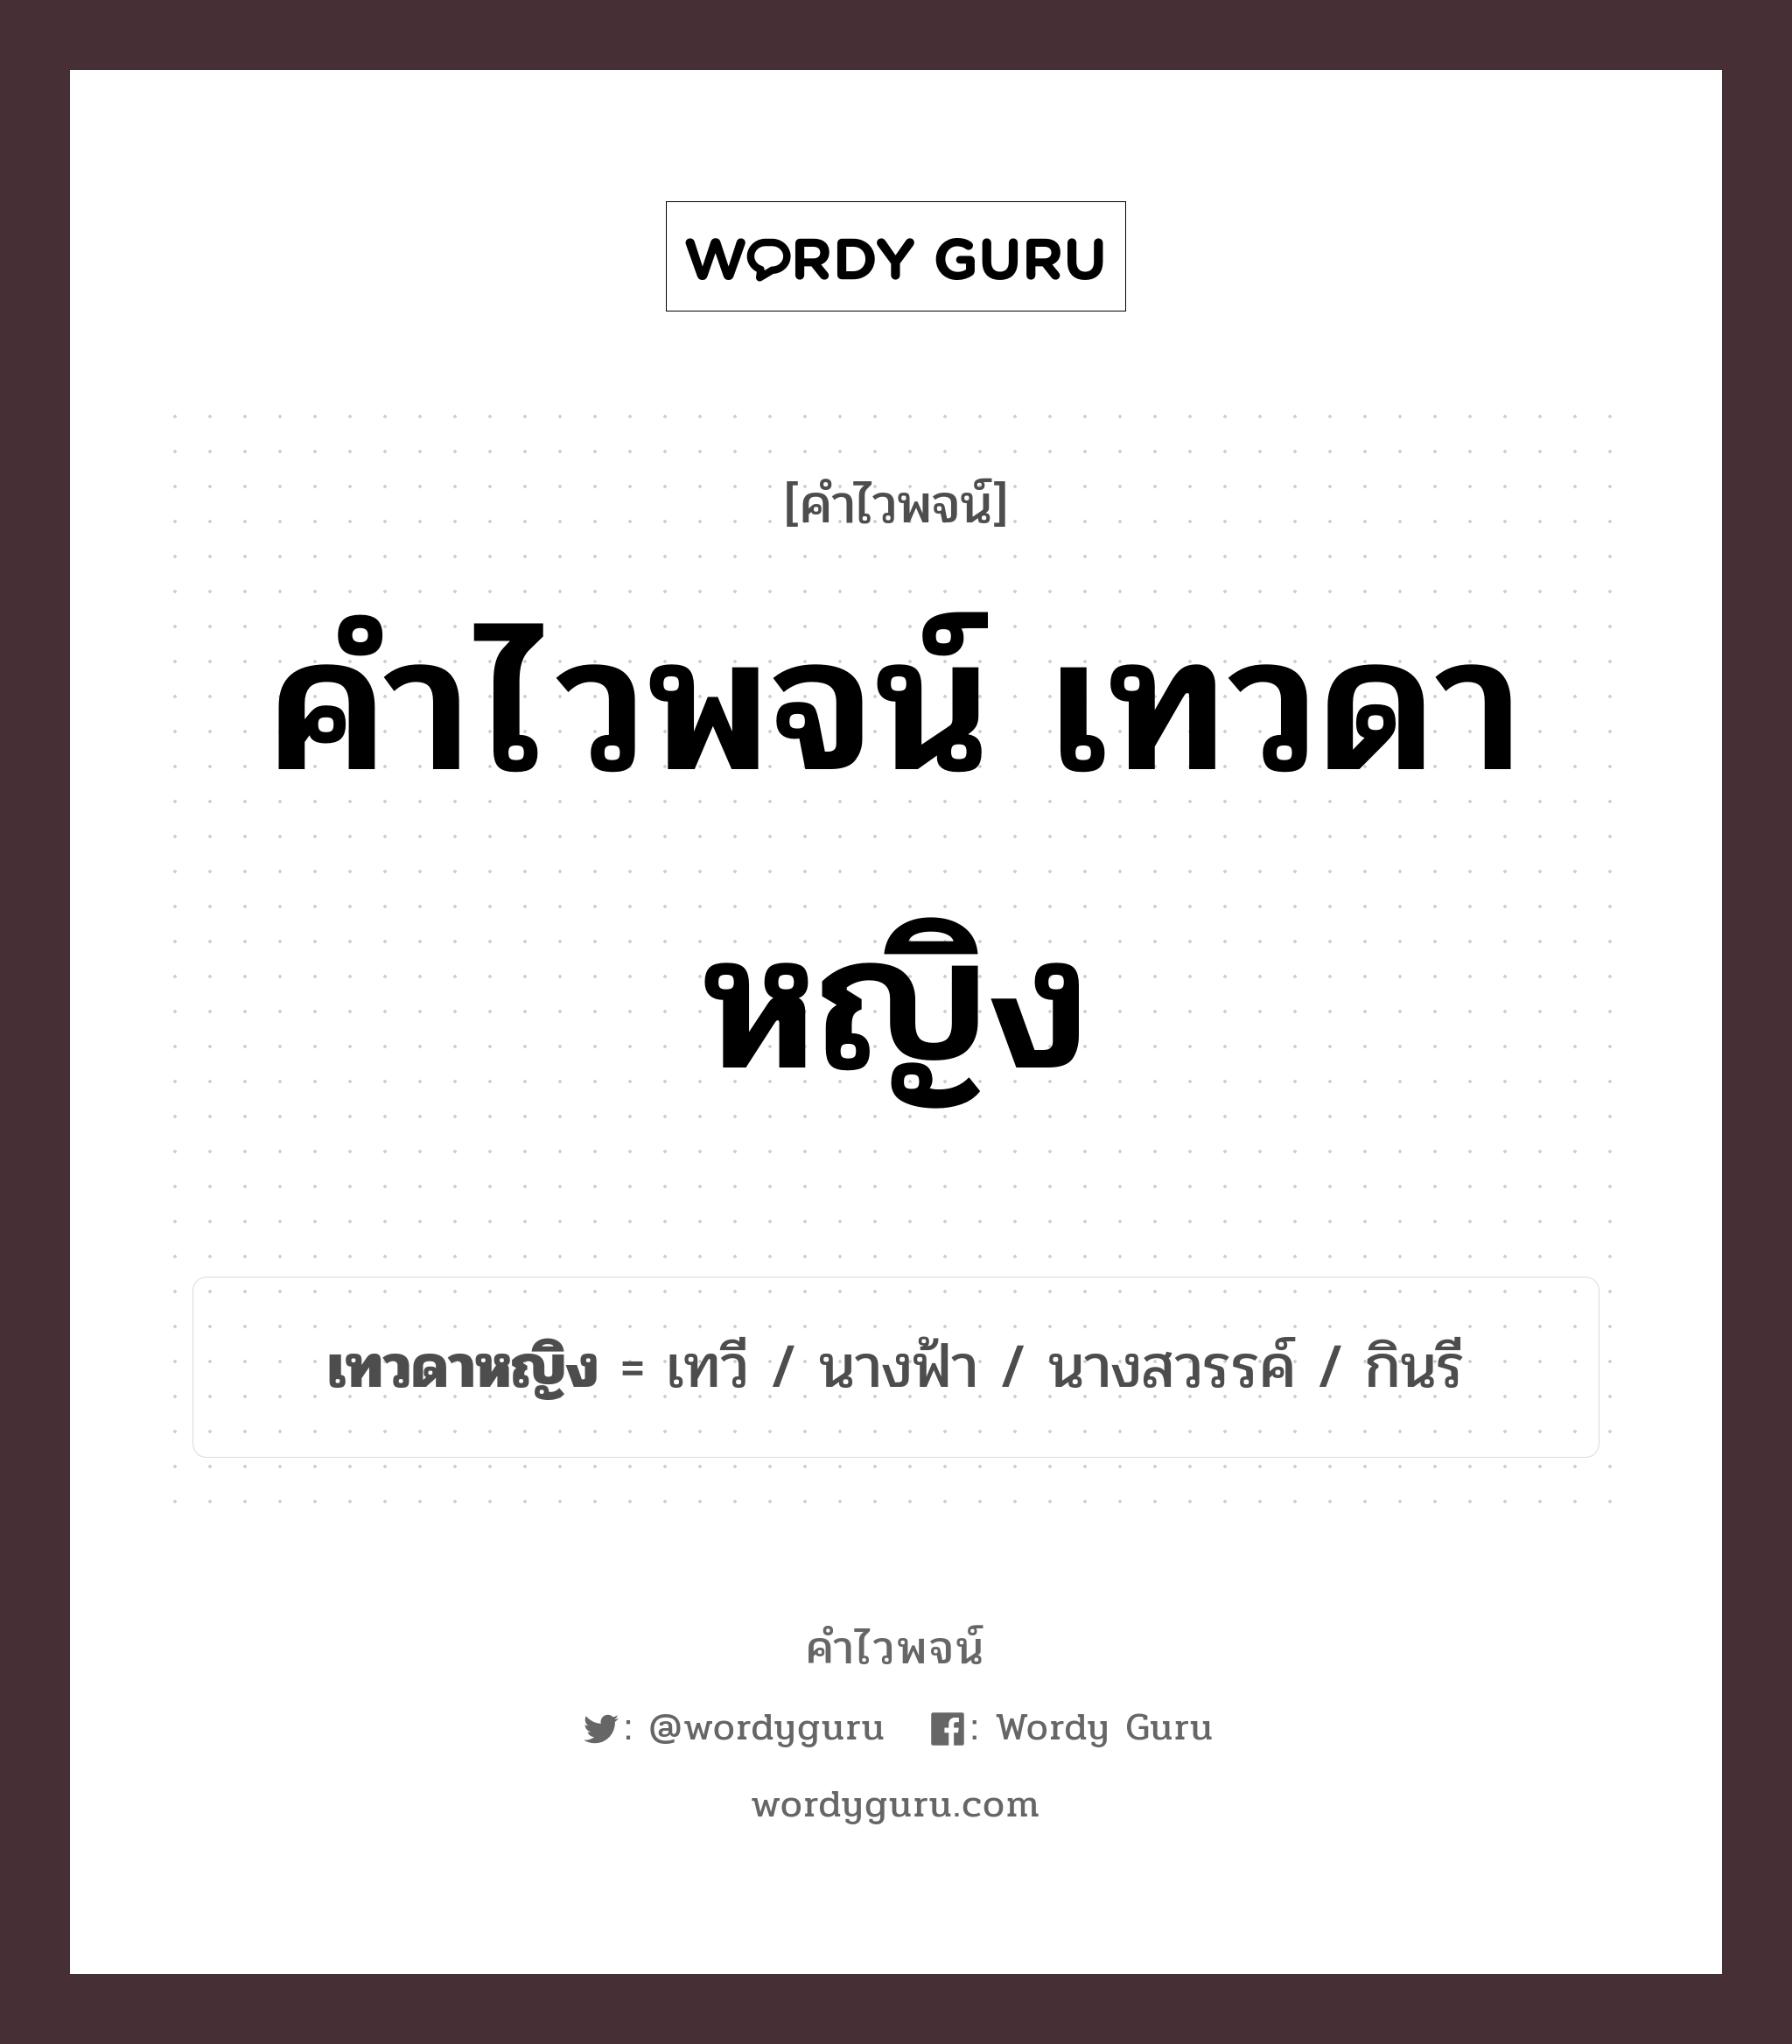 คำไวพจน์ เทวดาหญิง คืออะไร?, คำในภาษาไทย นางฟ้า กลุ่มคำไวพจน์ คำไวพจน์กลุ่ม พระ/เทวดา